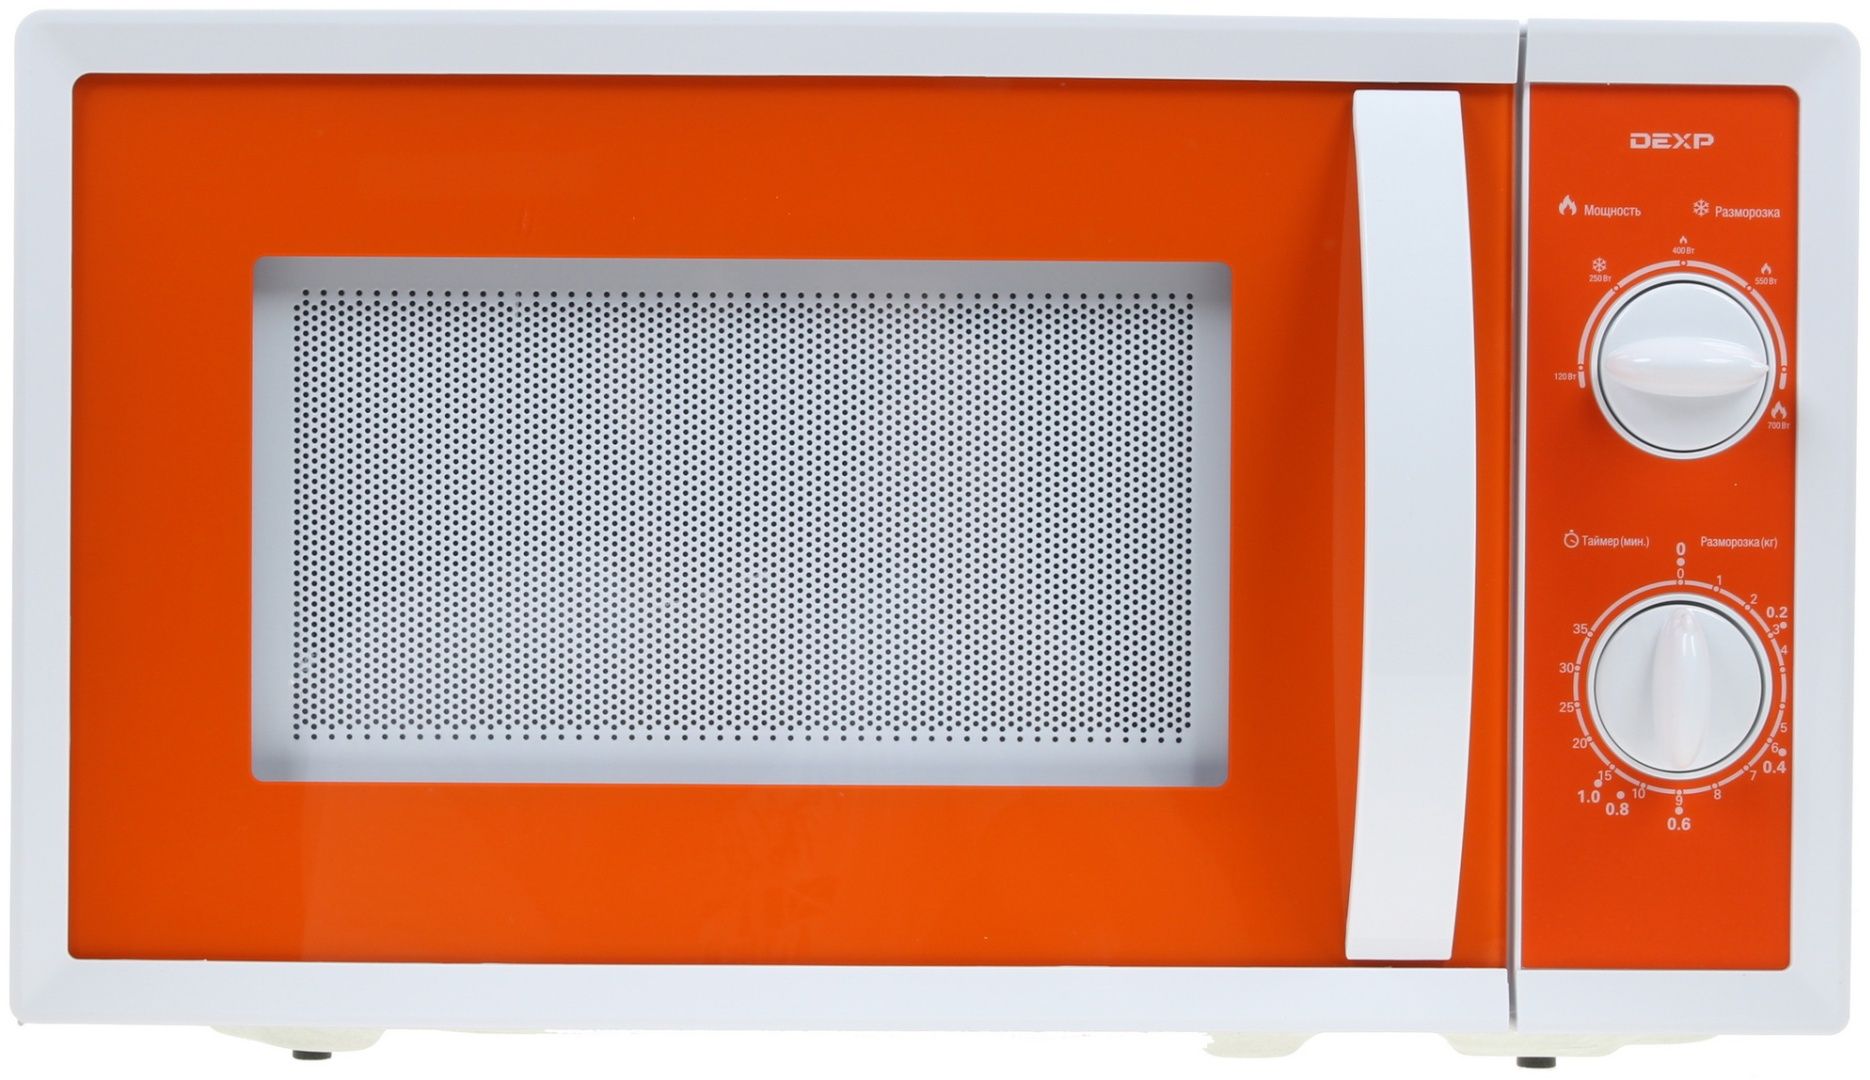 Микроволновая печь DEXP MC-or оранжевый. Микроволновая печь DEXP MC-or оранжевый, белый. ДНС микроволновая печь оранжевая. Микроволновая печь DEXP MC-Rd.